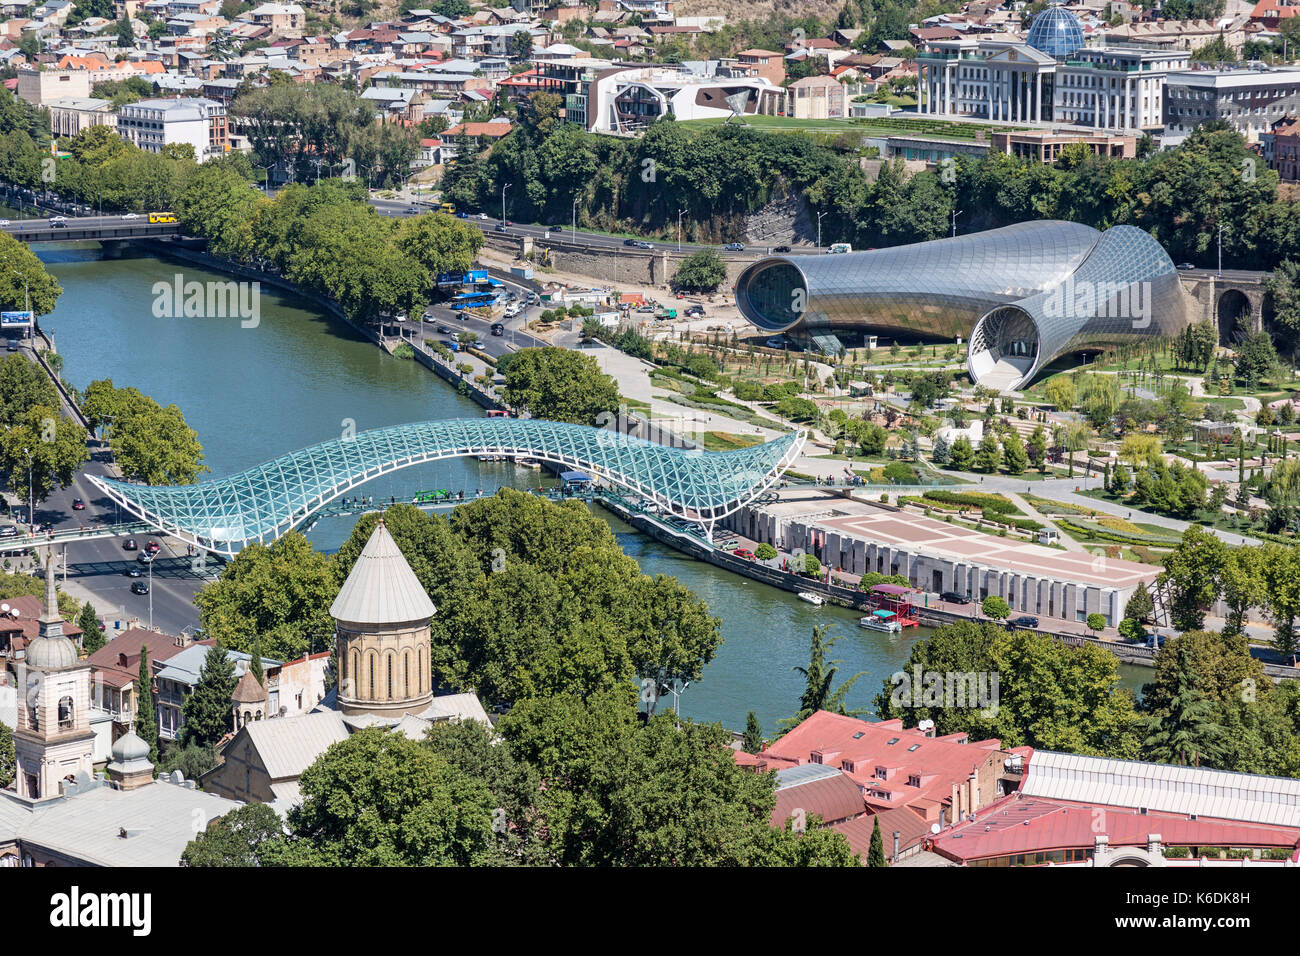 Vue sur Tbilissi, capitale de la Géorgie, montrant le pont de la paix, centre culturel, et de la rivière Kura. Banque D'Images